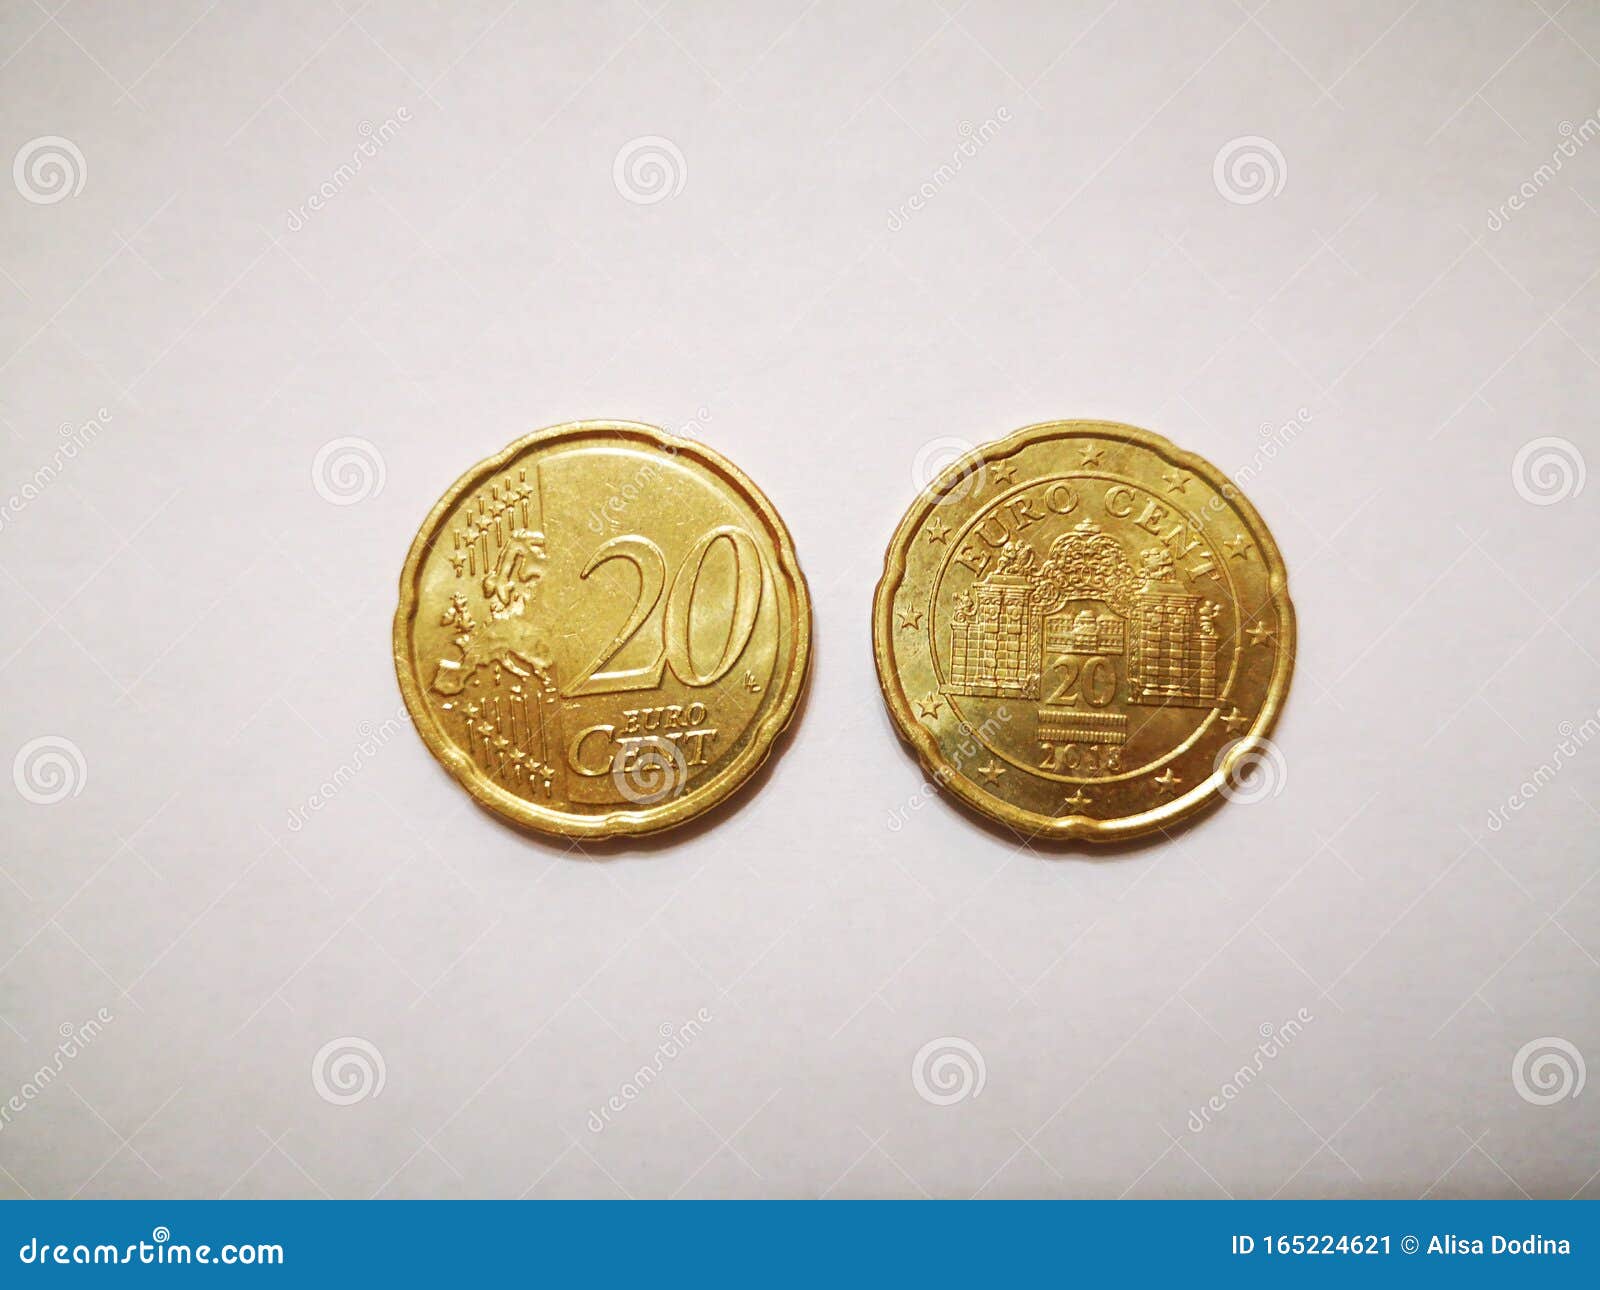 澳元10分硬币图片,澳元硬币20分图片 - 伤感说说吧